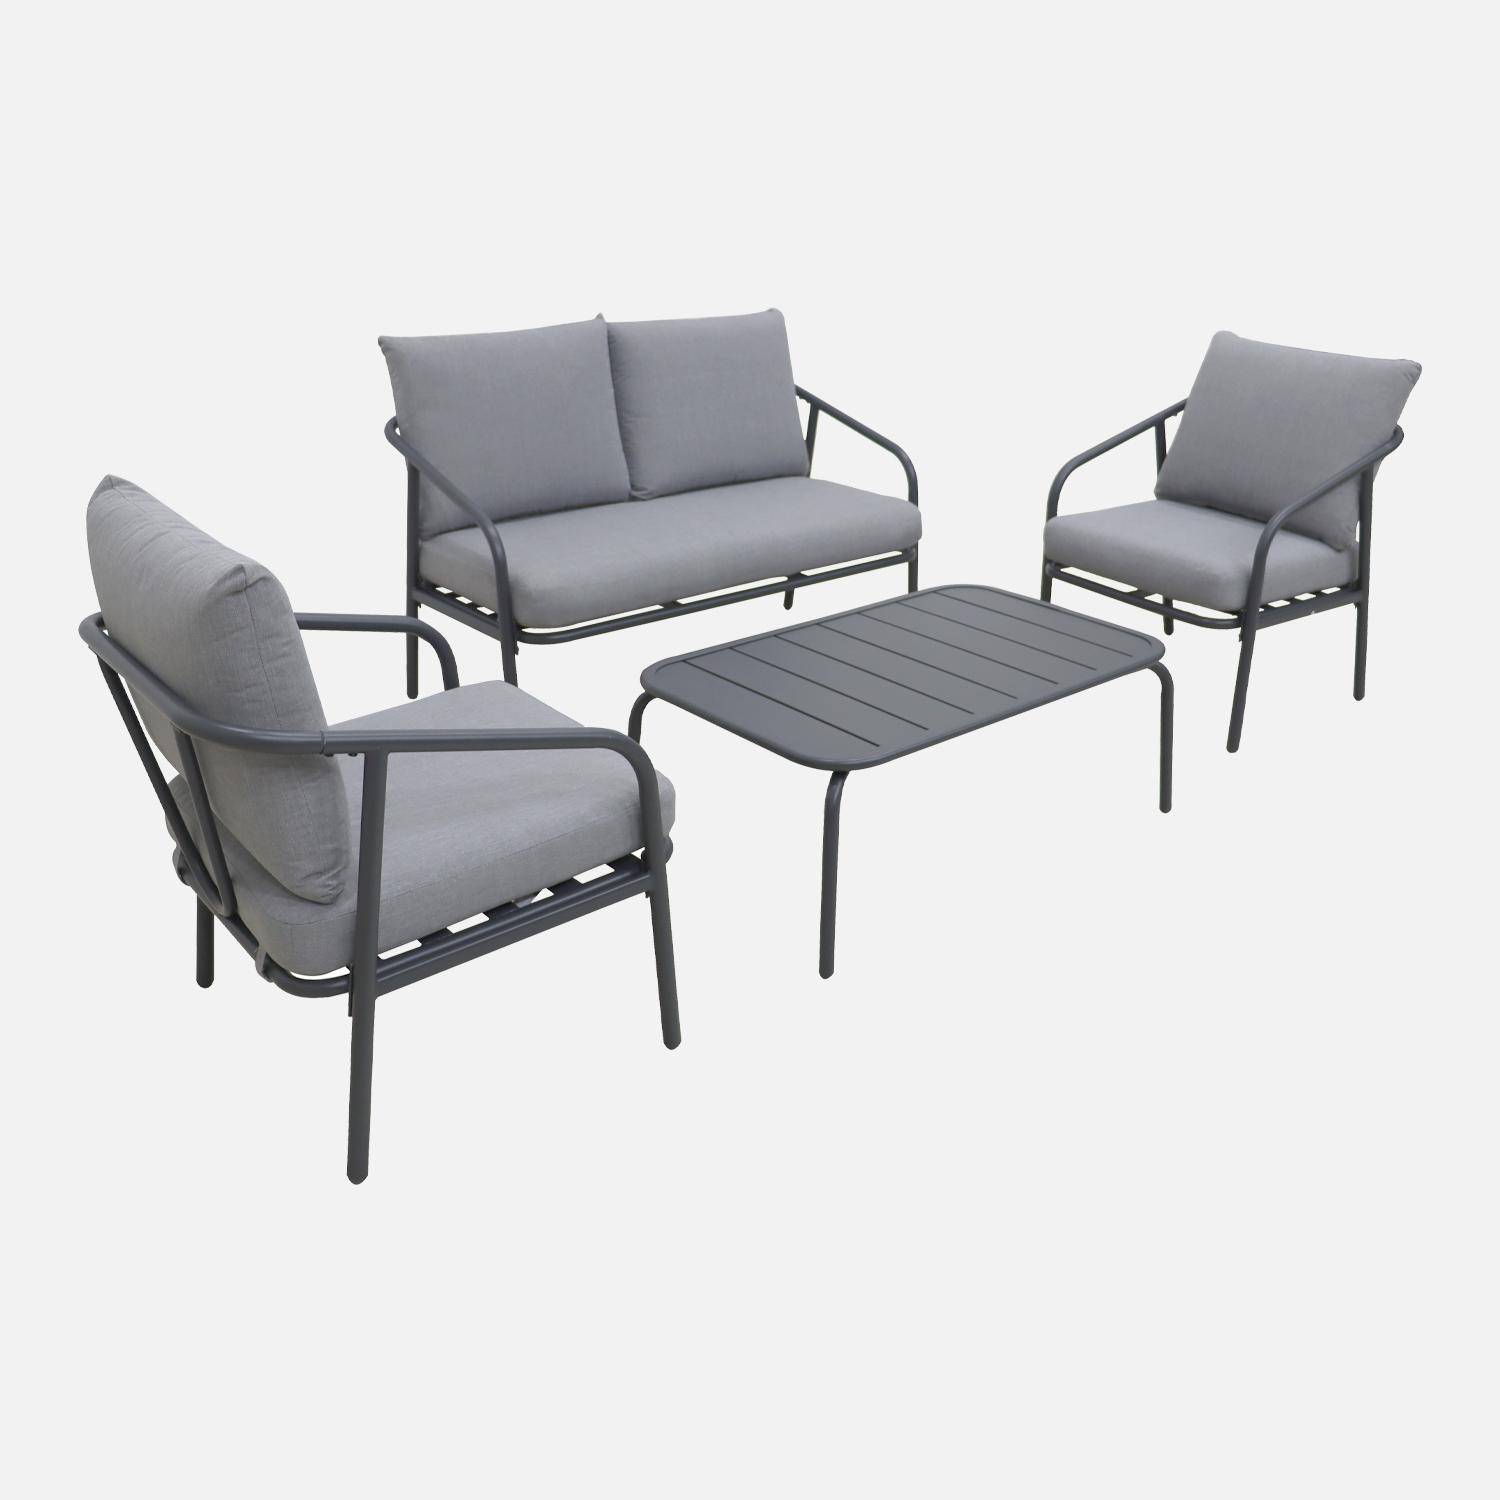 Set di mobili da giardino in metallo a 4 posti in antracite, cuscini grigi, design puro e arrotondato,sweeek,Photo4